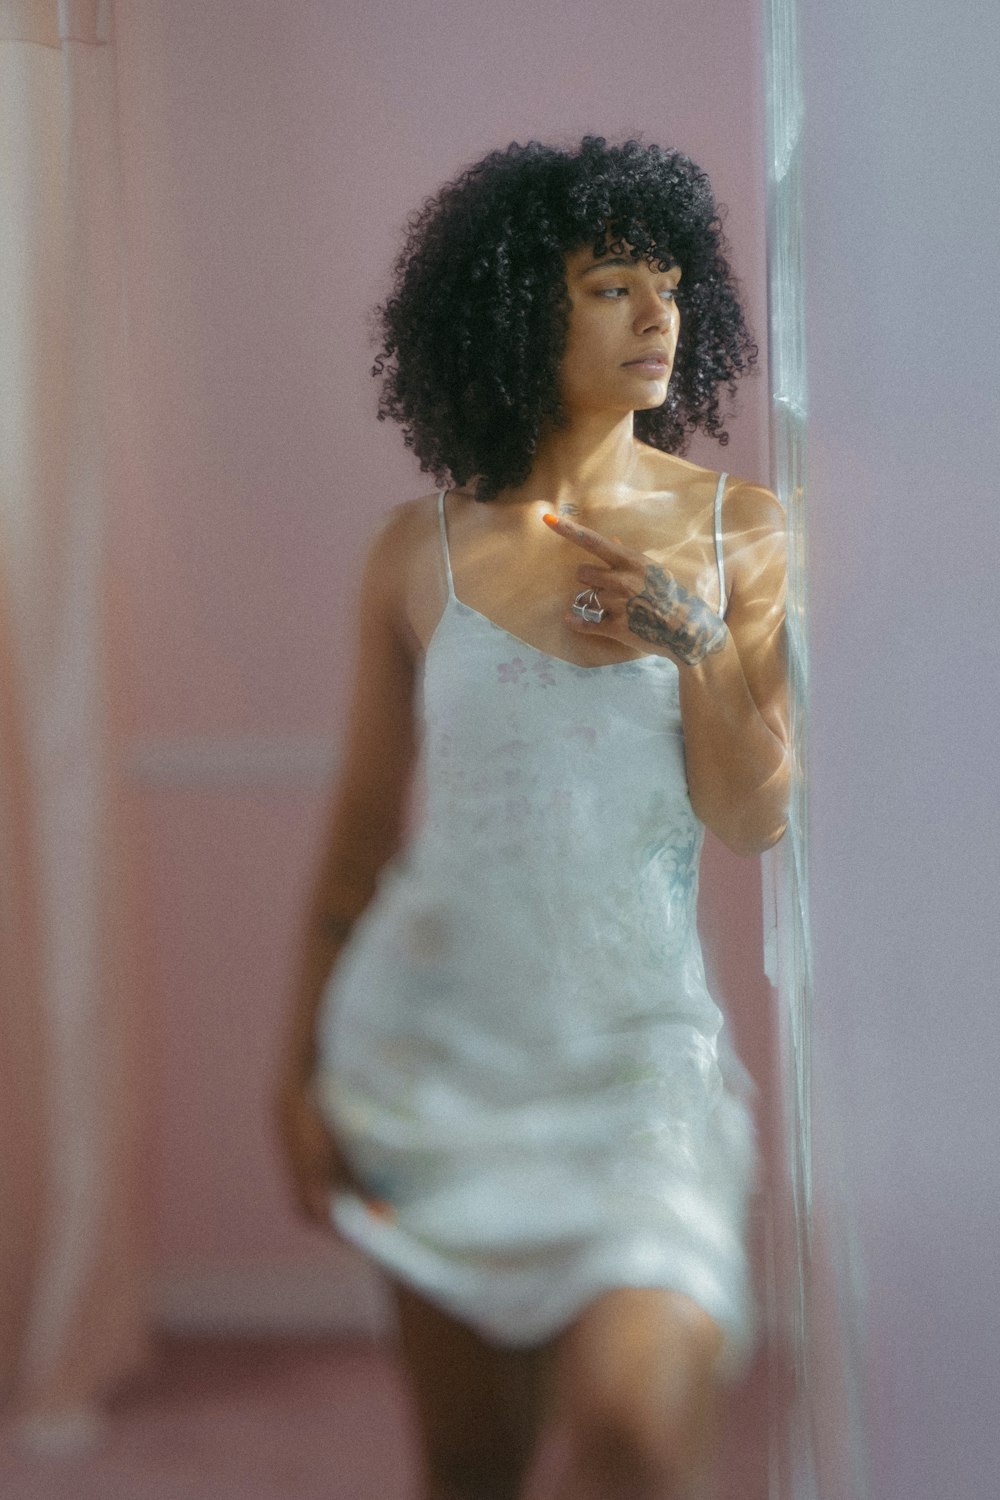 거울 앞에 서 있는 하얀 드레스를 입은 여자